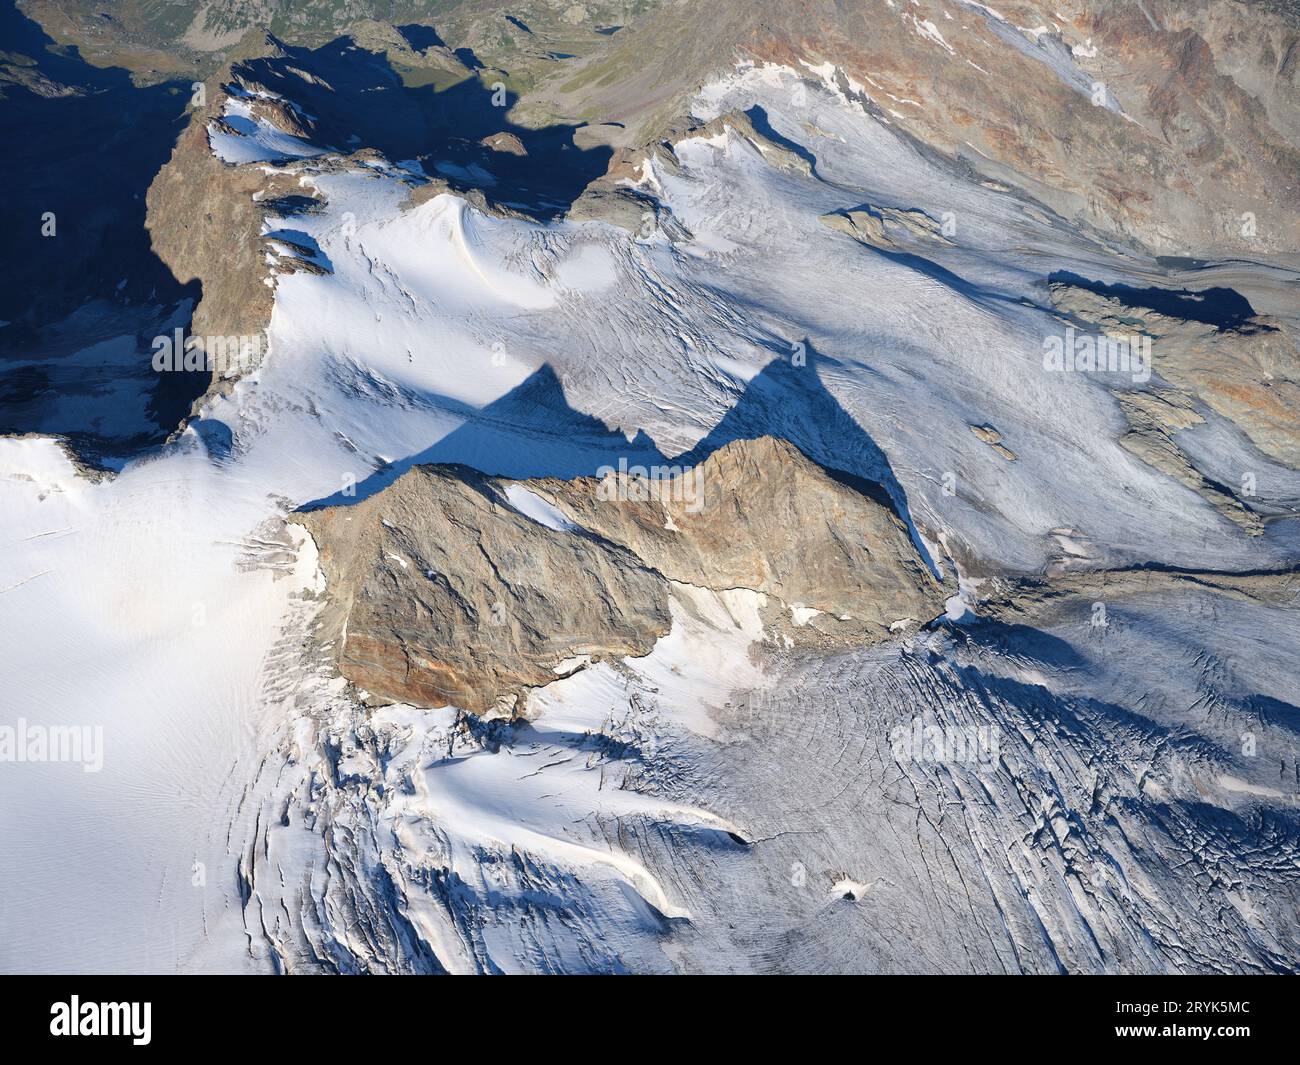 VISTA AEREA. Formazione rocciosa Les Vedettes sul ghiacciaio del Rutor sul versante settentrionale di testa del Rutor. La Thuile, Val Grisenche, Valle d'Aosta, Italia. Foto Stock